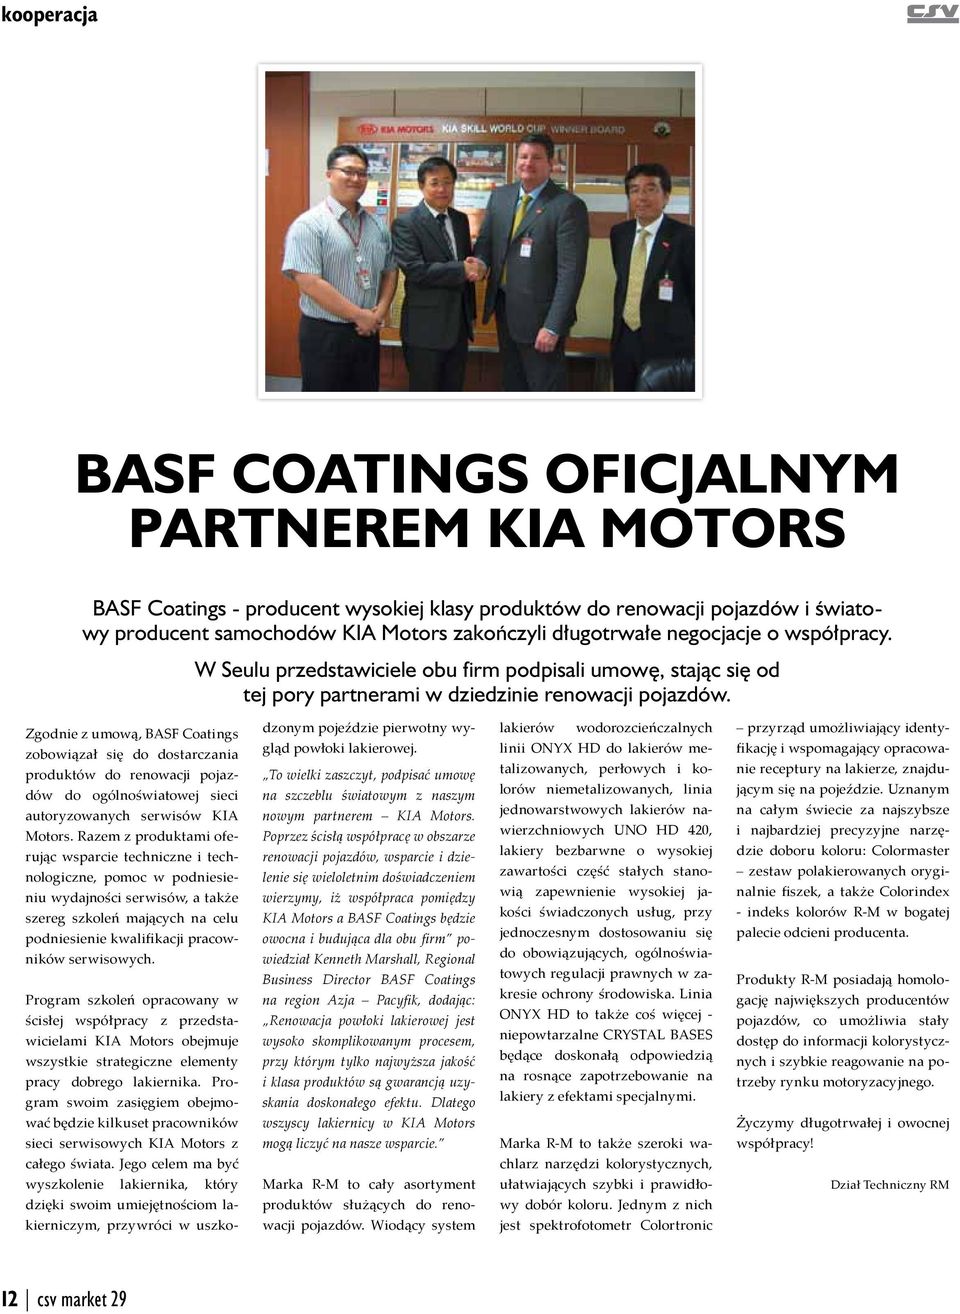 Zgodnie z umową, BASF Coatings zobowiązał się do dostarczania produktów do renowacji pojazdów do ogólnoświatowej sieci autoryzowanych serwisów KIA Motors.